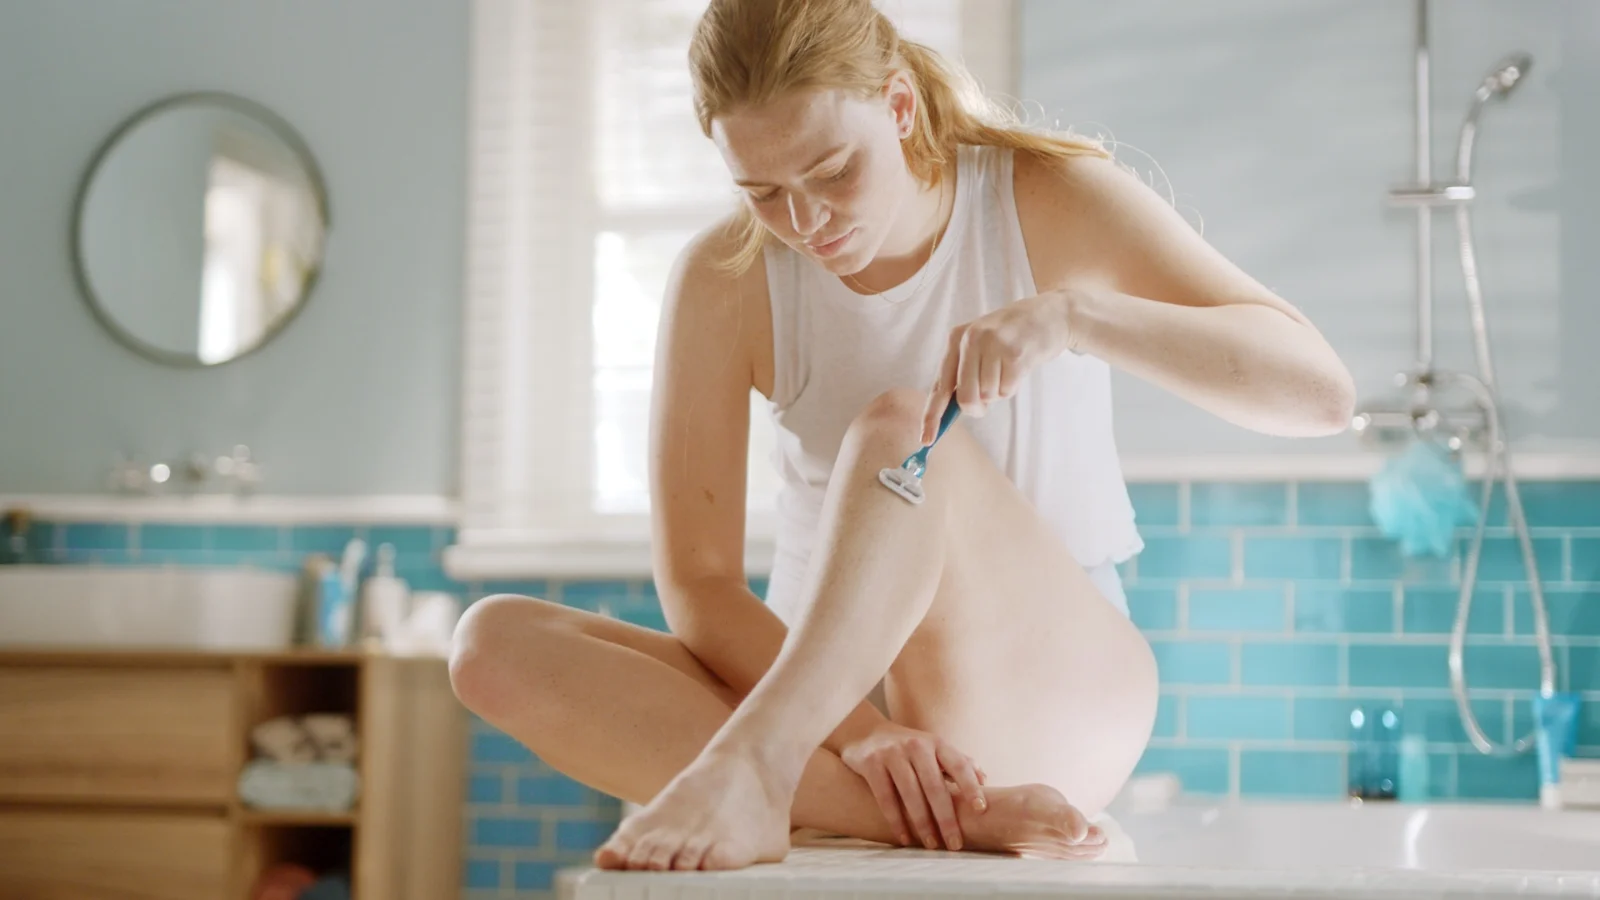 Frau sitzt auf dem Badewannenrand und rasiert ihre Beine mit dem Gillette Venus Rasierer